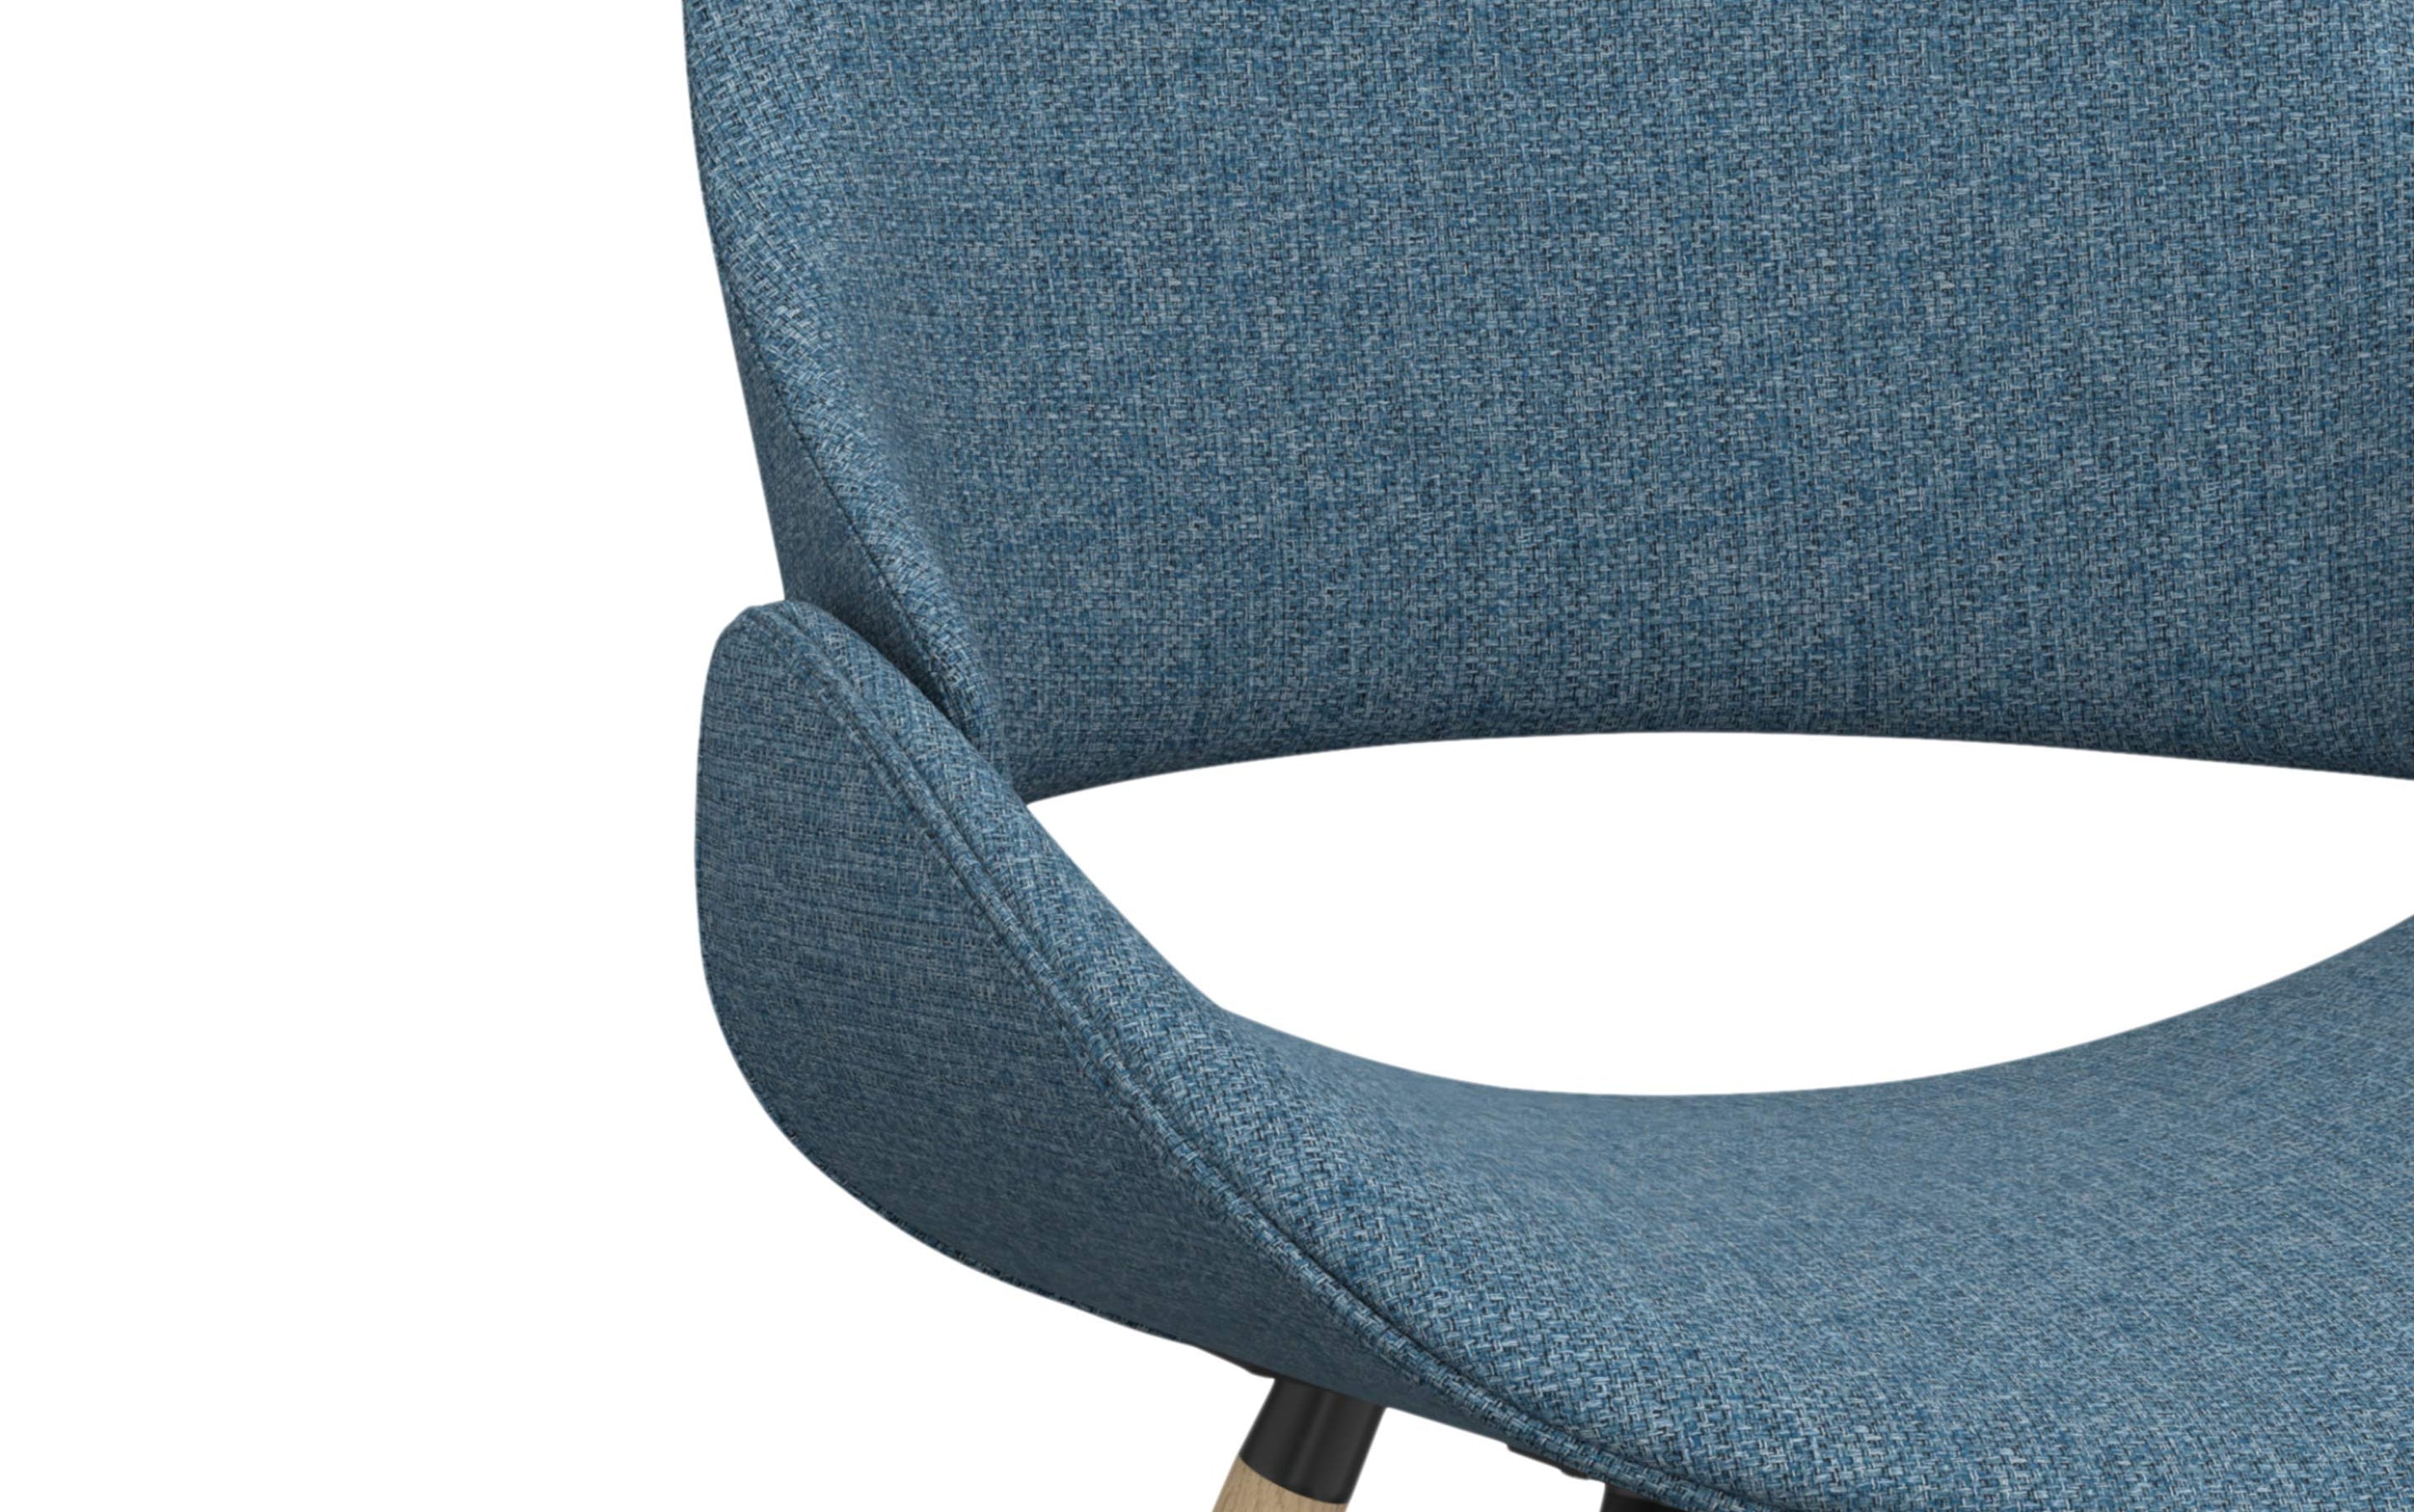 Denim Blue Light Wood | Malden Bentwood Dining Chair